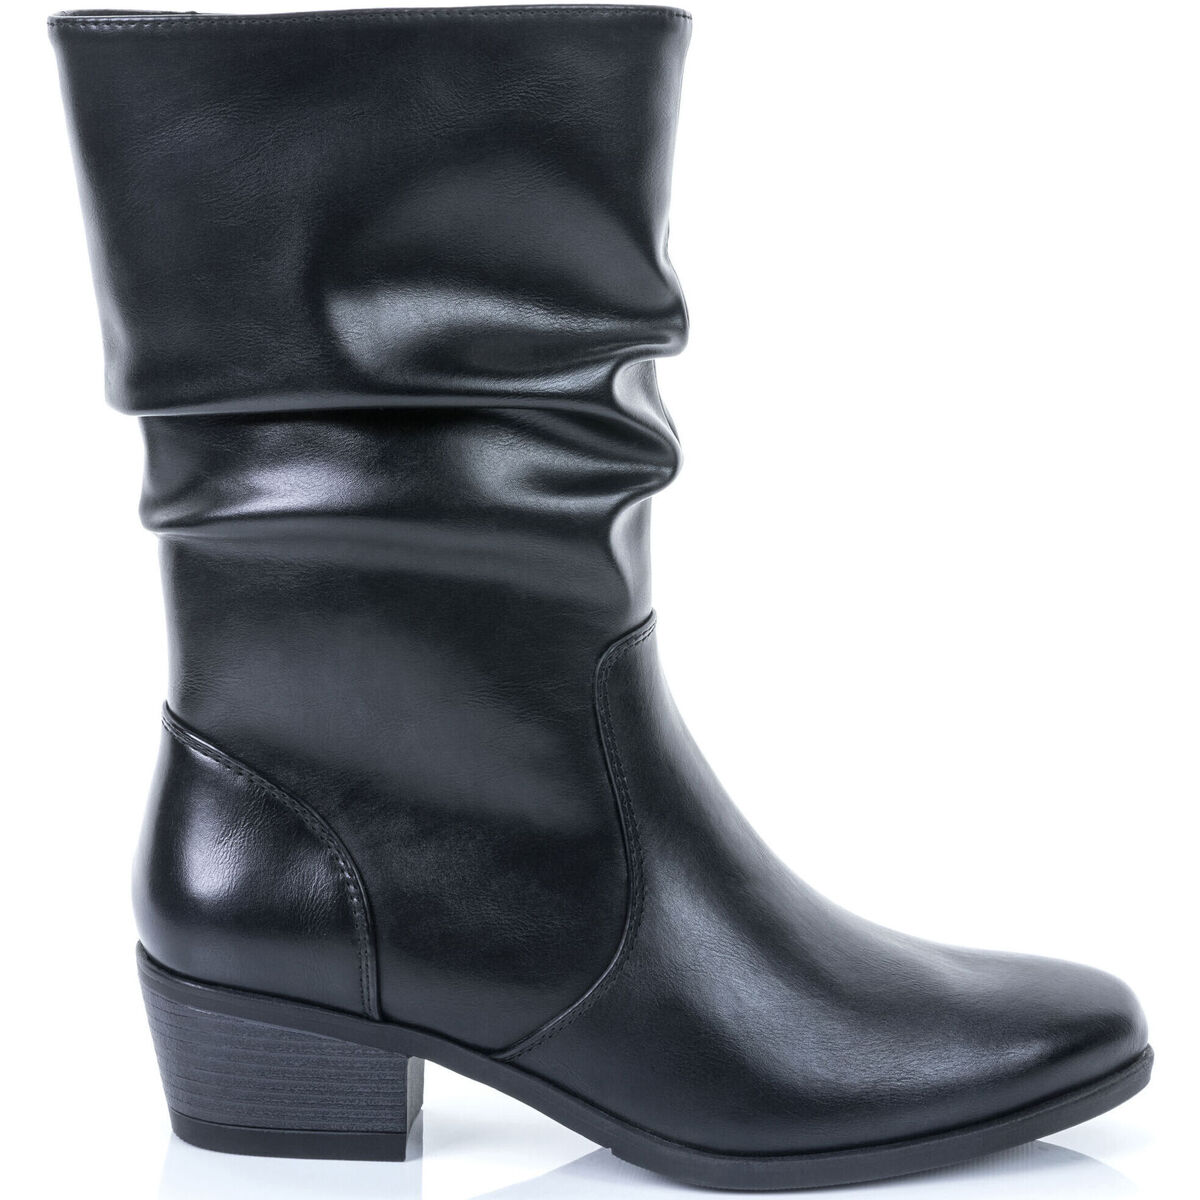 Chaussures Femme Boots Zippées Semelle Compensée Cuir Boots / bottines Femme Noir Noir